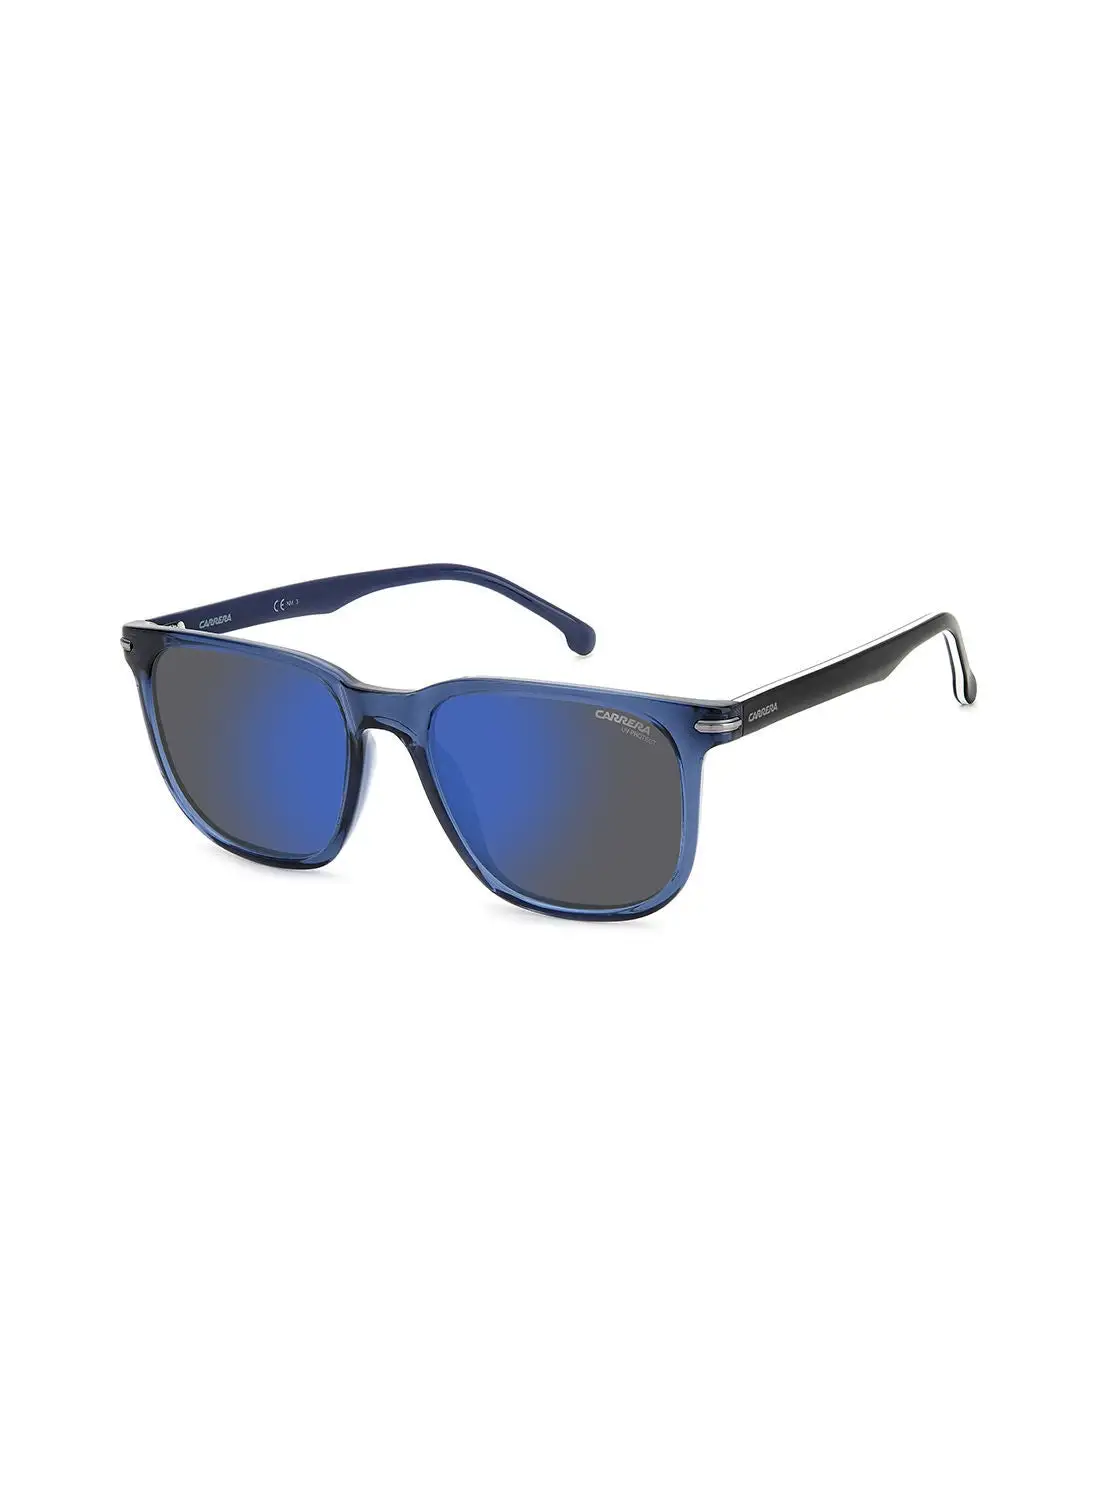 نظارة كاريرا مربعة الشكل للحماية من الأشعة فوق البنفسجية للجنسين - Carrera 300/S Blue 54 - مقاس العدسة: 54 ملم